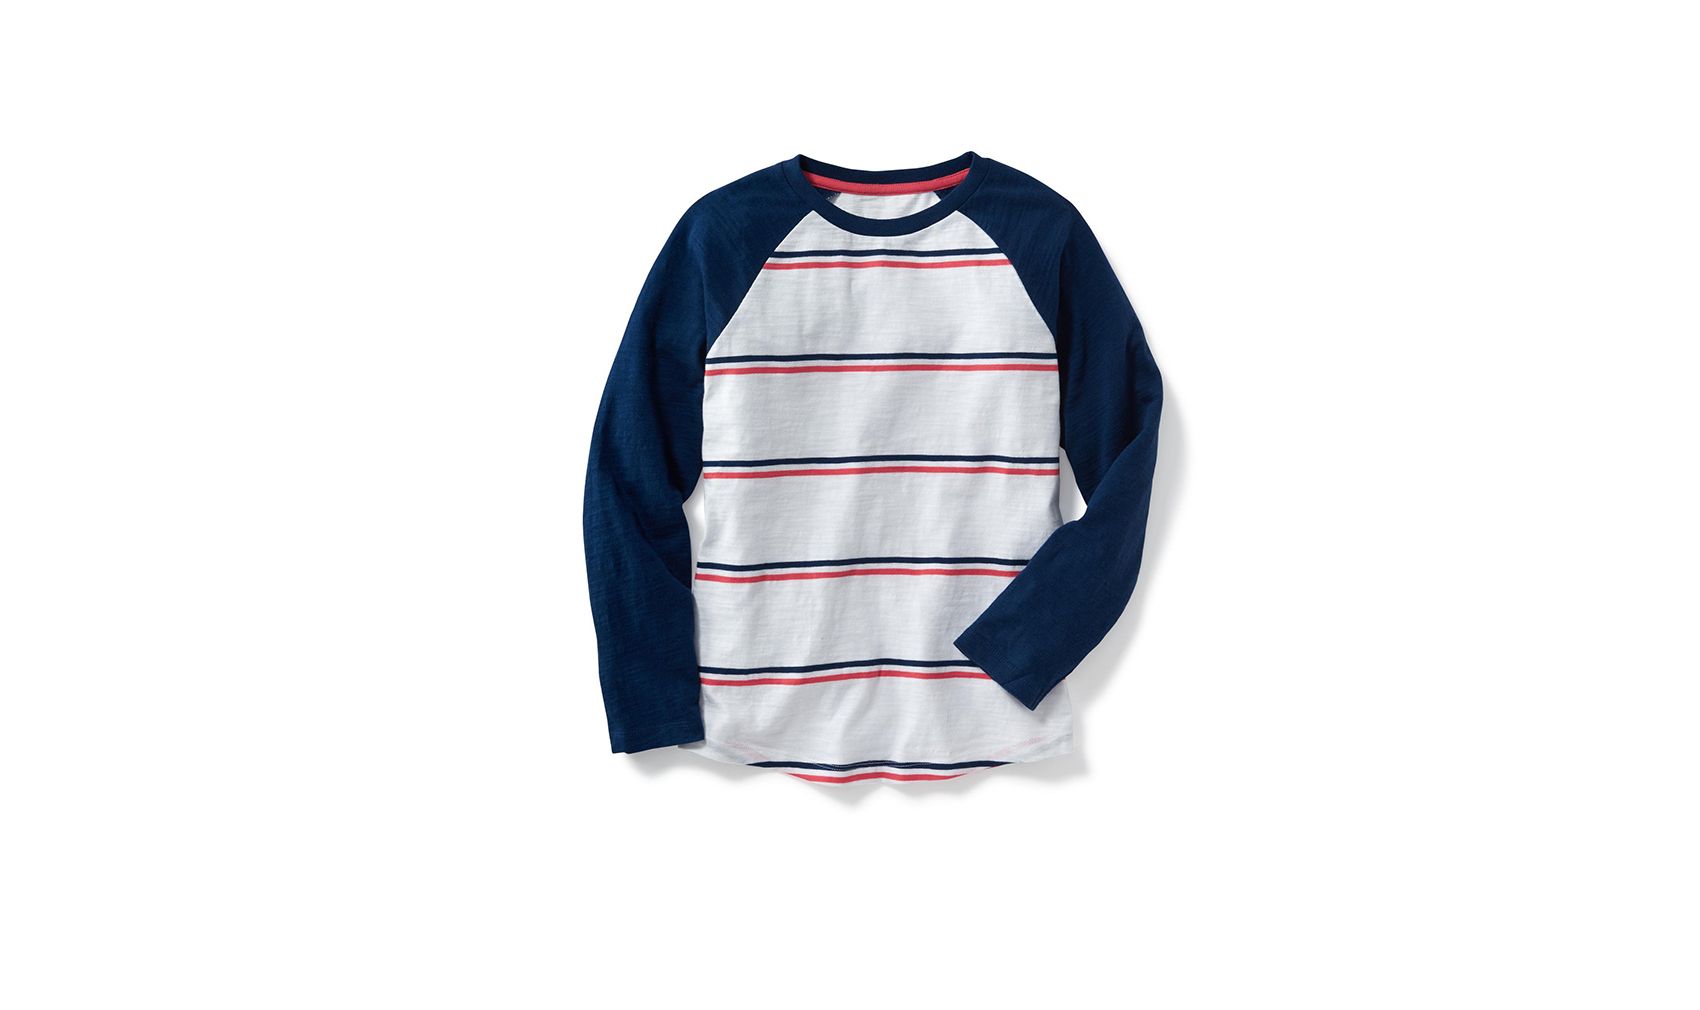 올드 네이비 보이즈의 래글런 슬리브 야구 티셔츠